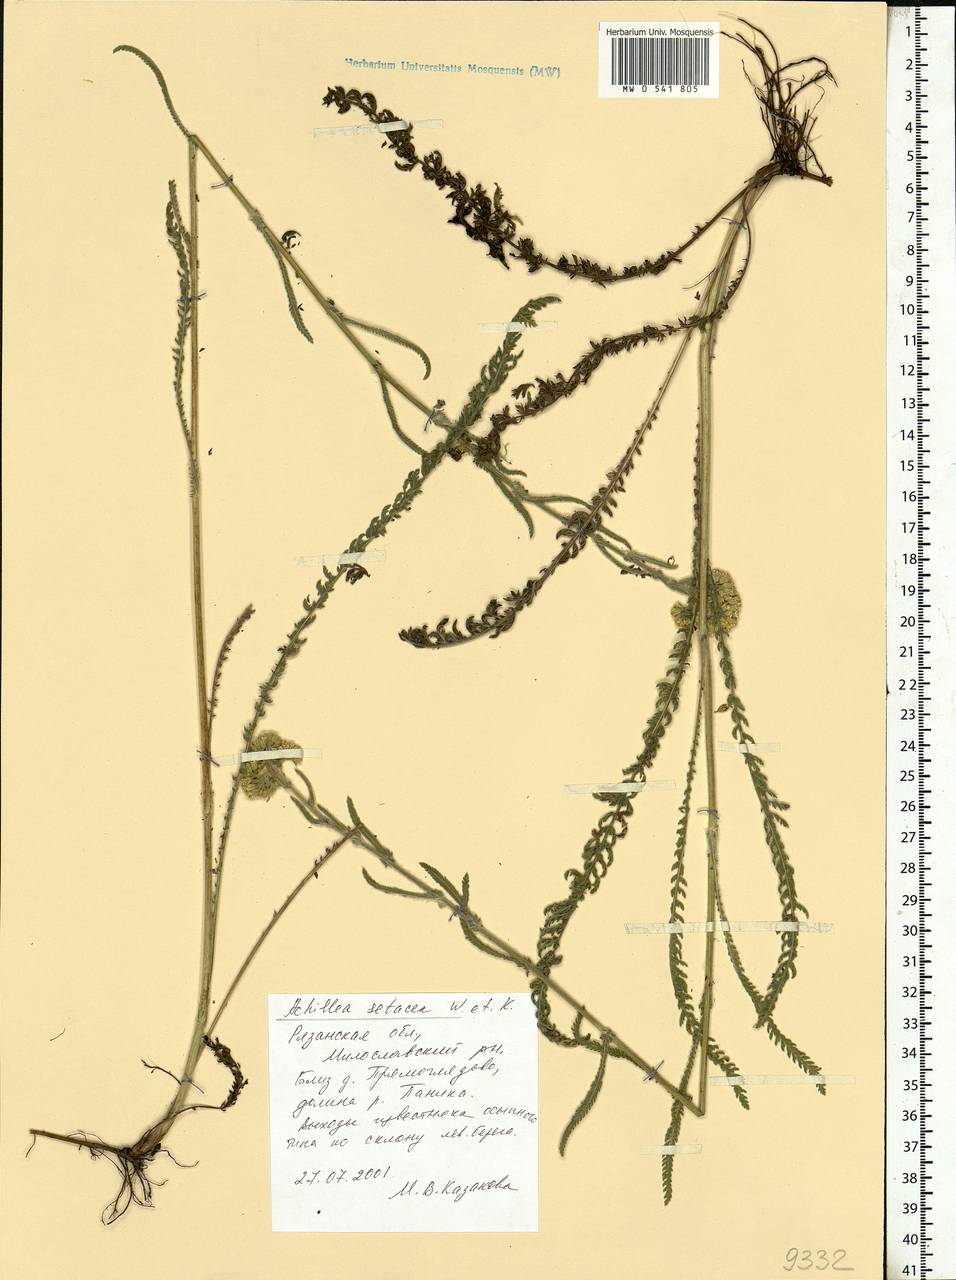 Achillea setacea Waldst. & Kit., Eastern Europe, Central region (E4) (Russia)